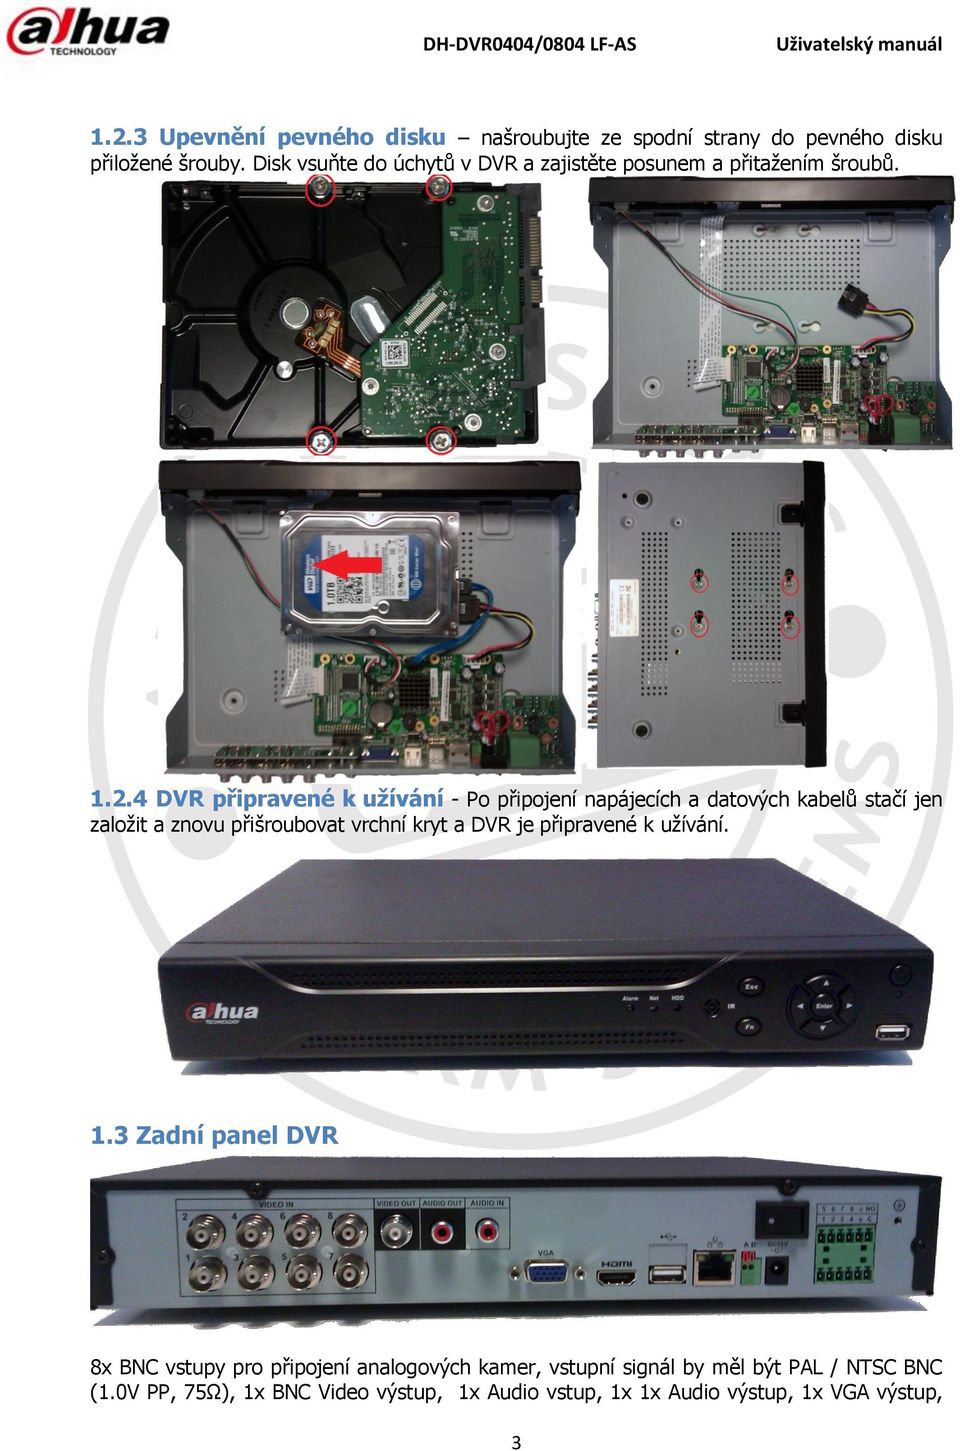 4 DVR připravené k užívání - Po připojení napájecích a datových kabelů stačí jen založit a znovu přišroubovat vrchní kryt a DVR